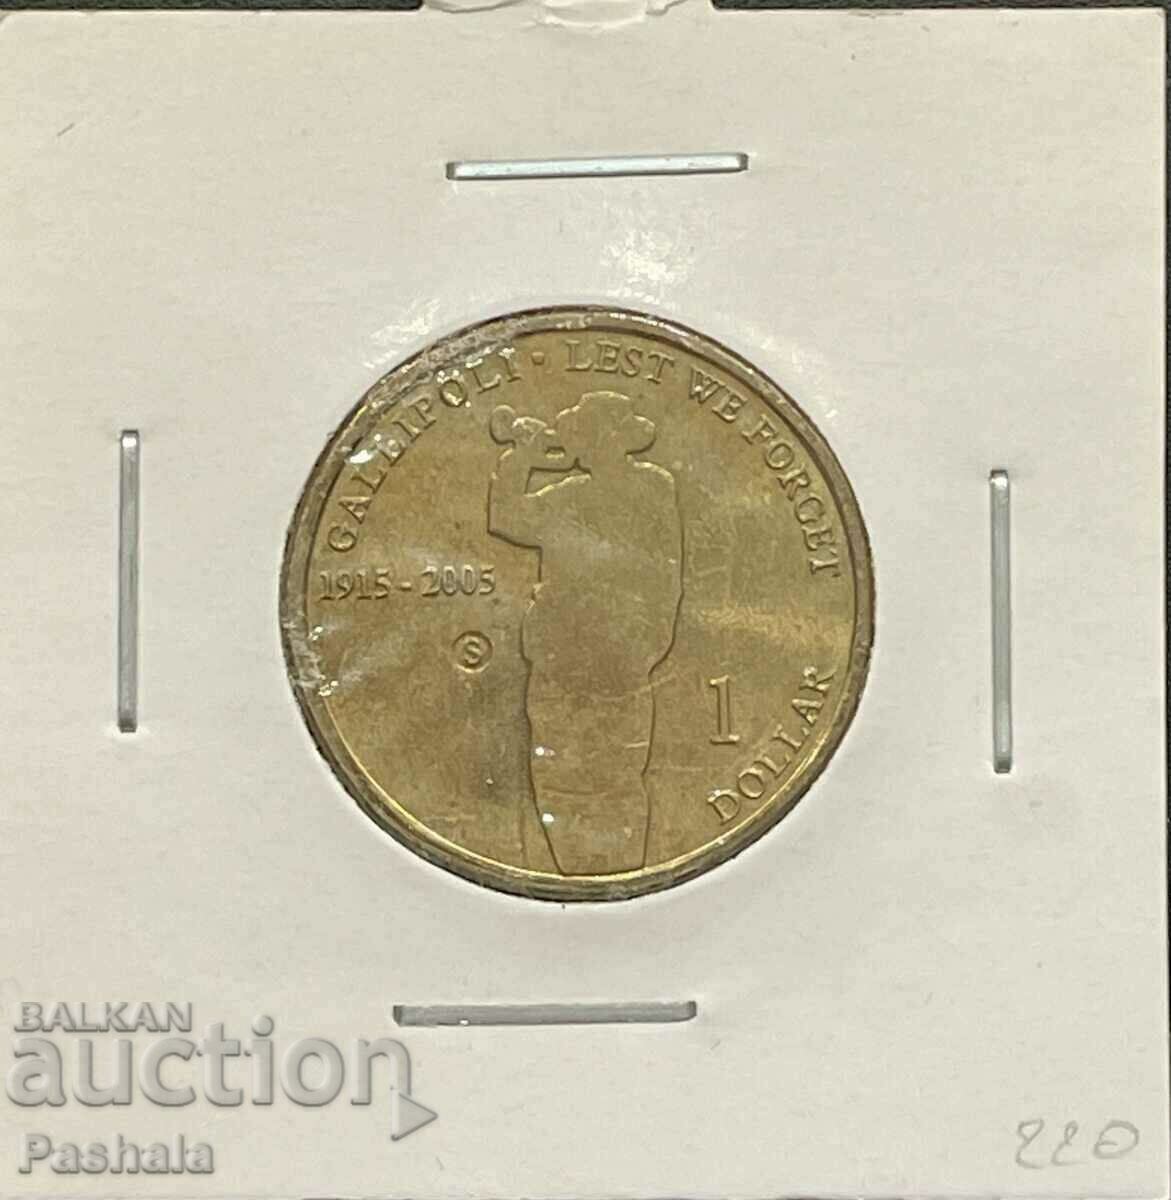 Australia $1 2005